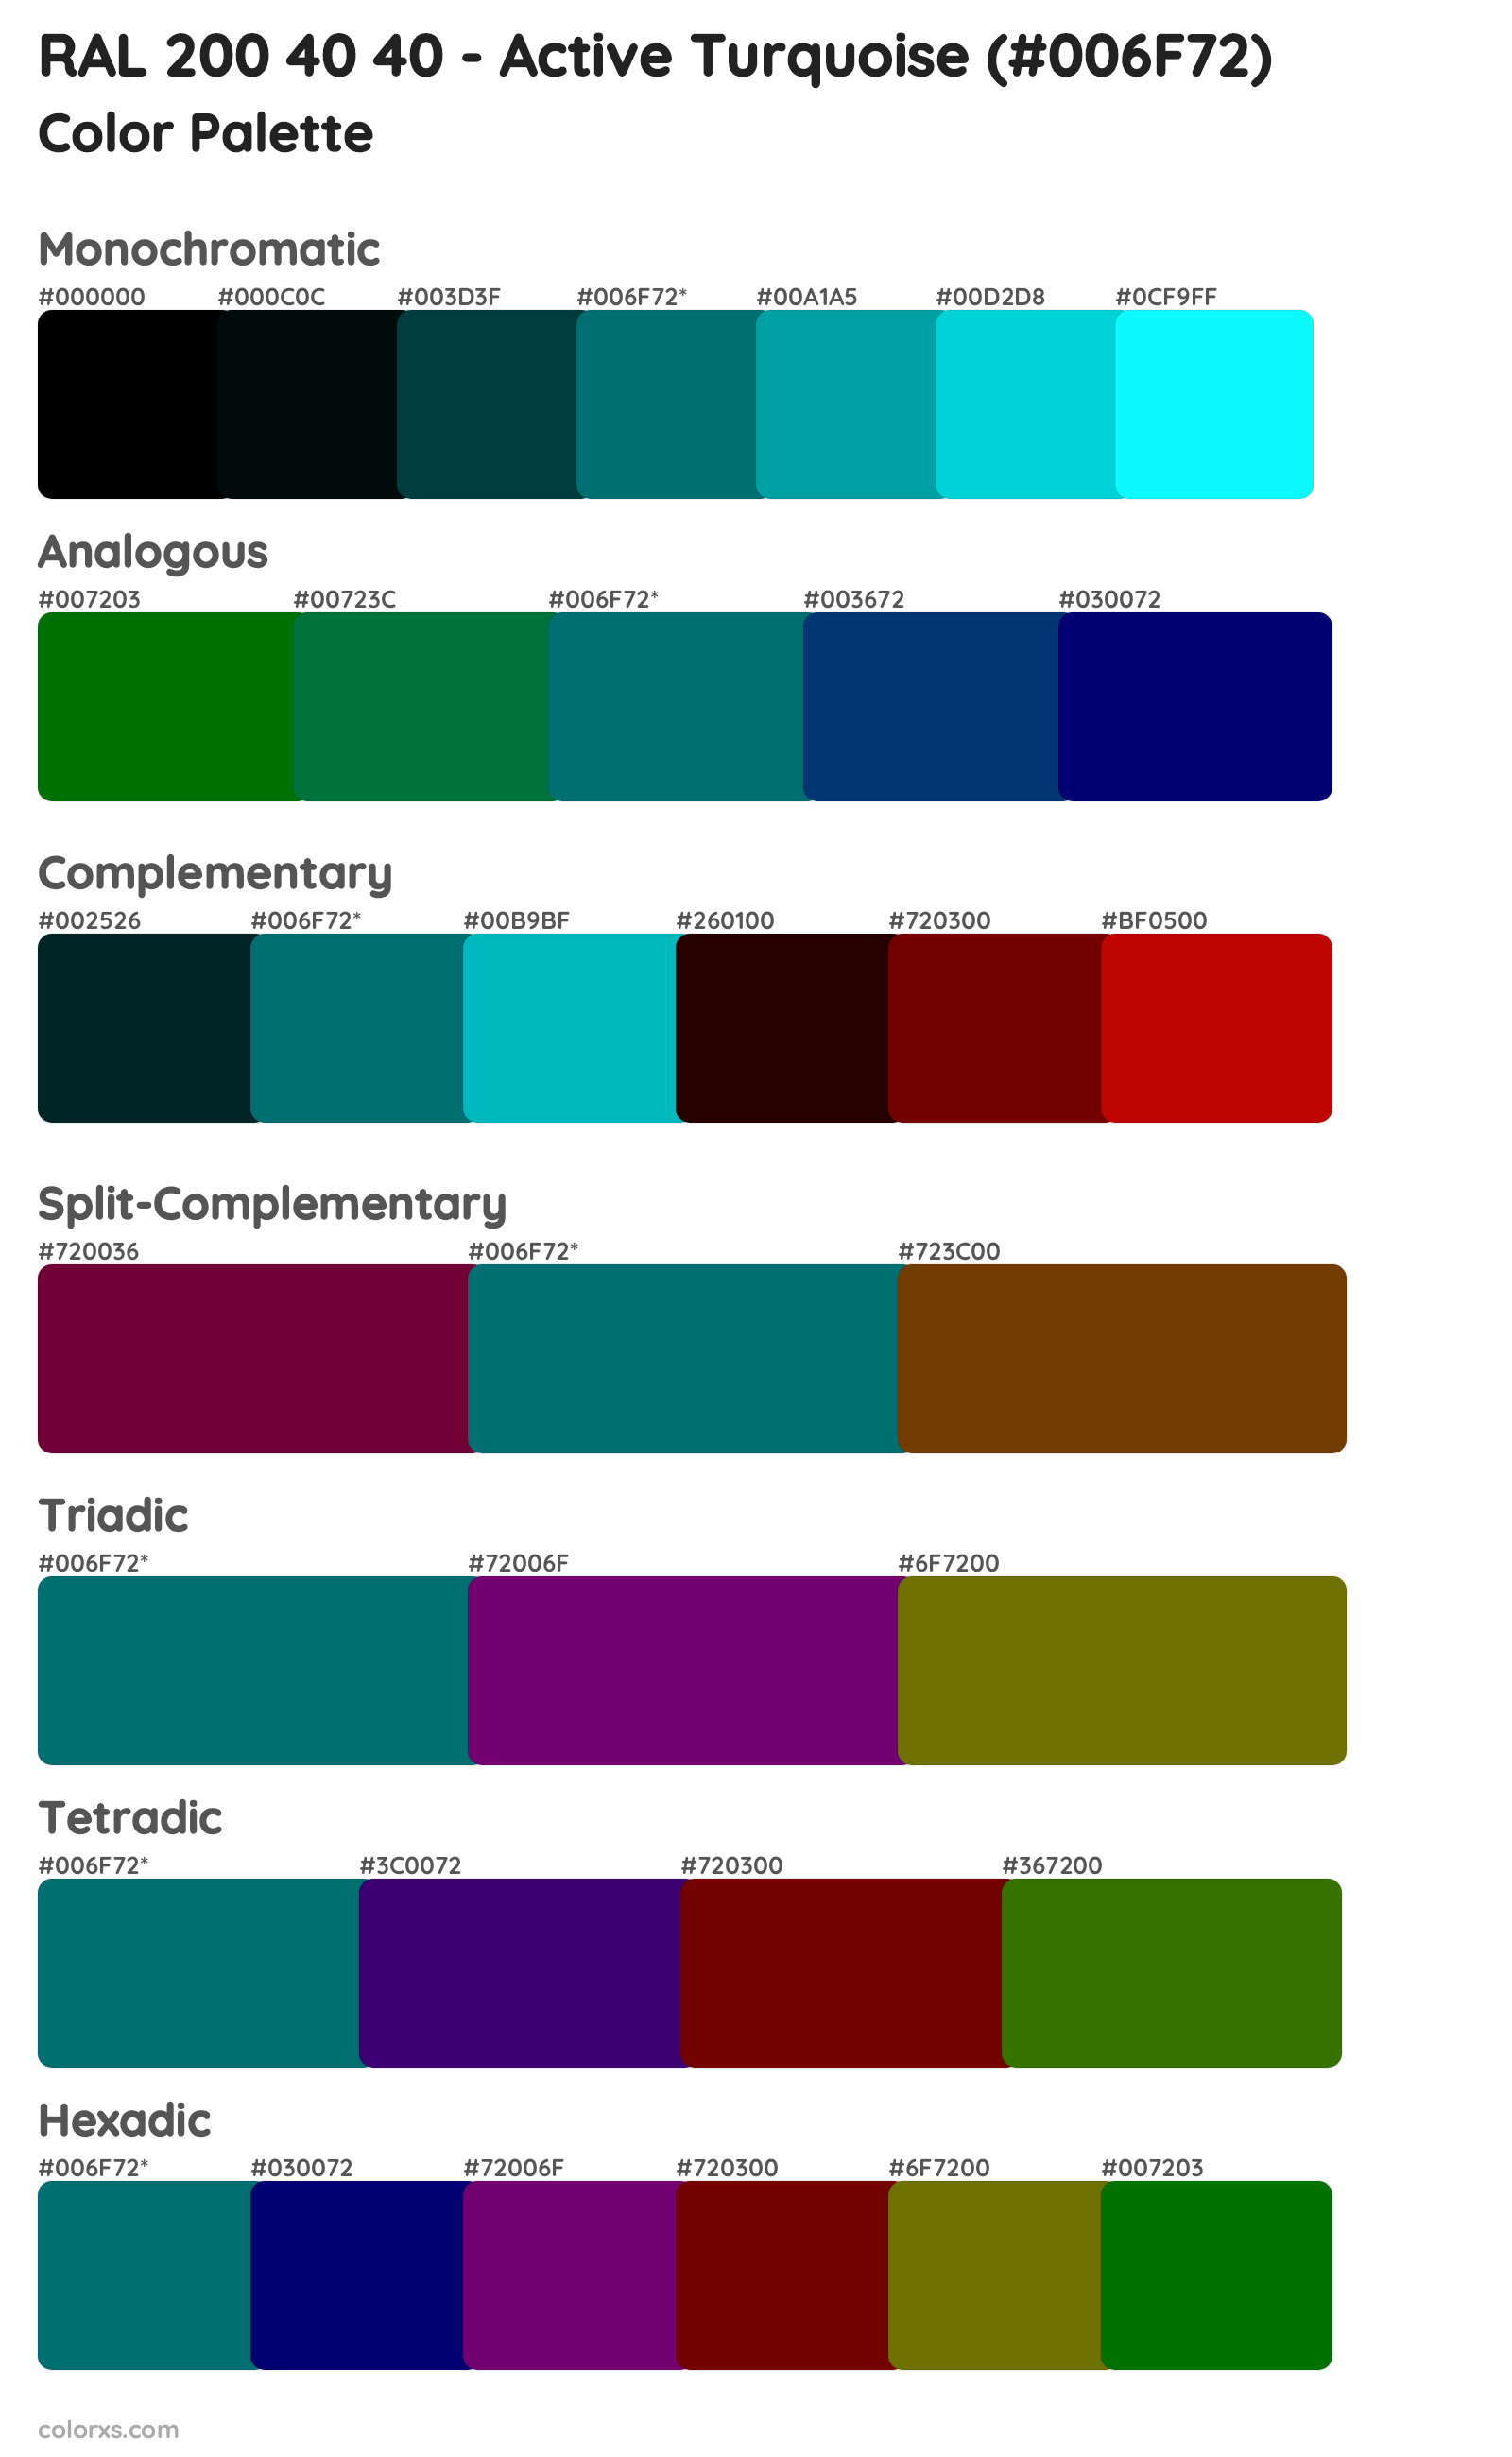 RAL 200 40 40 - Active Turquoise Color Scheme Palettes